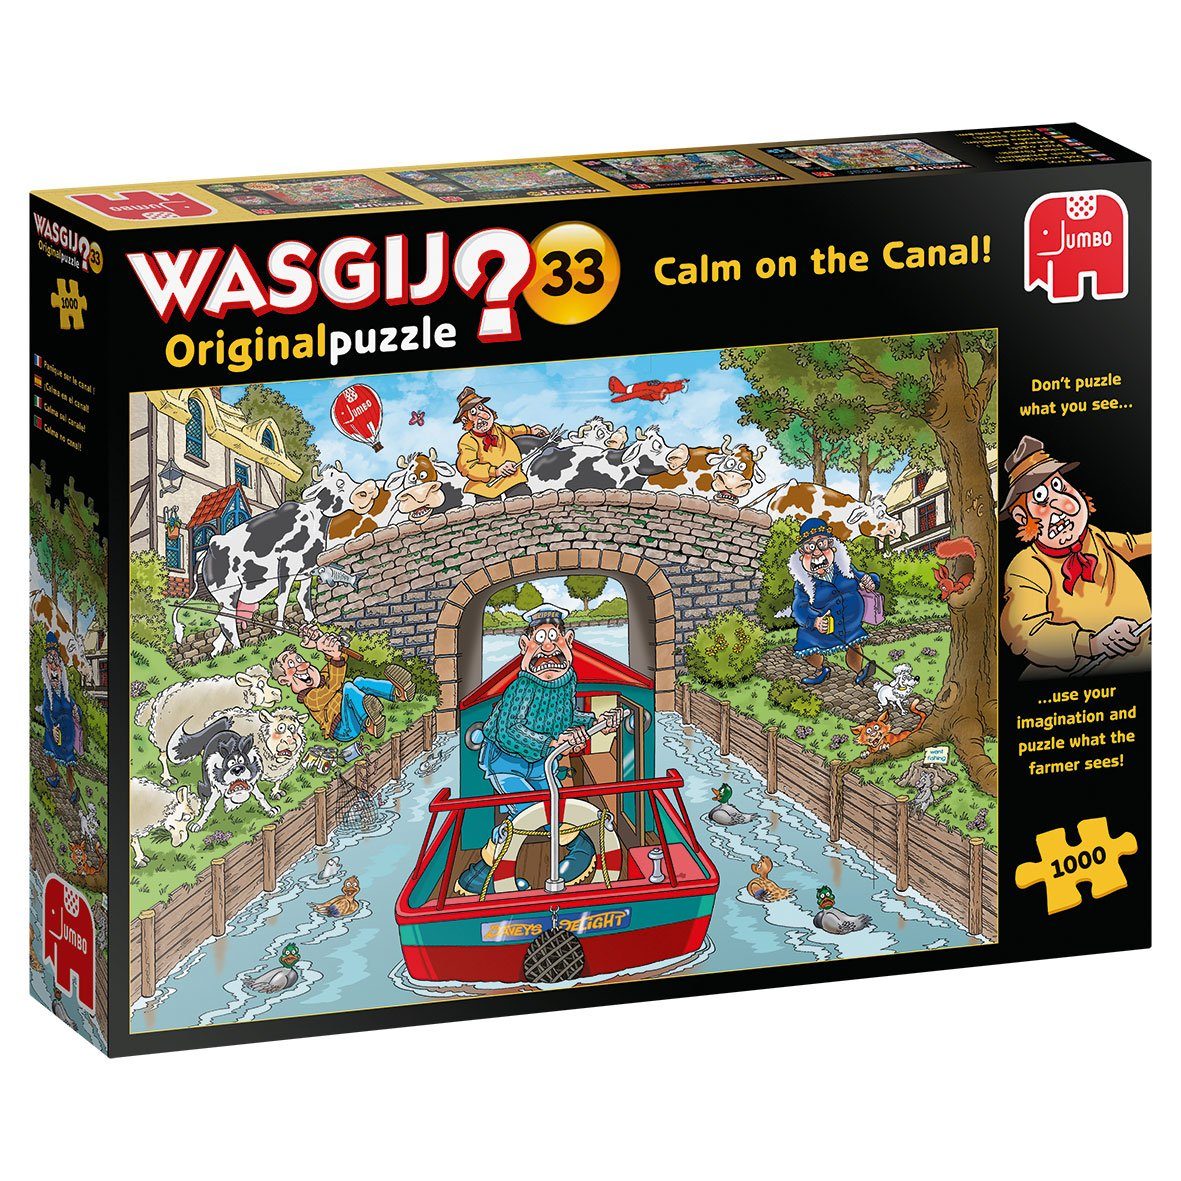 Jumbo Spiele Puzzle Wasgij Farmer Original was auf Kanal, Sie, Fahrt 33 Puzzleteile, dem der 1000 Ruhige sieht. Puzzeln